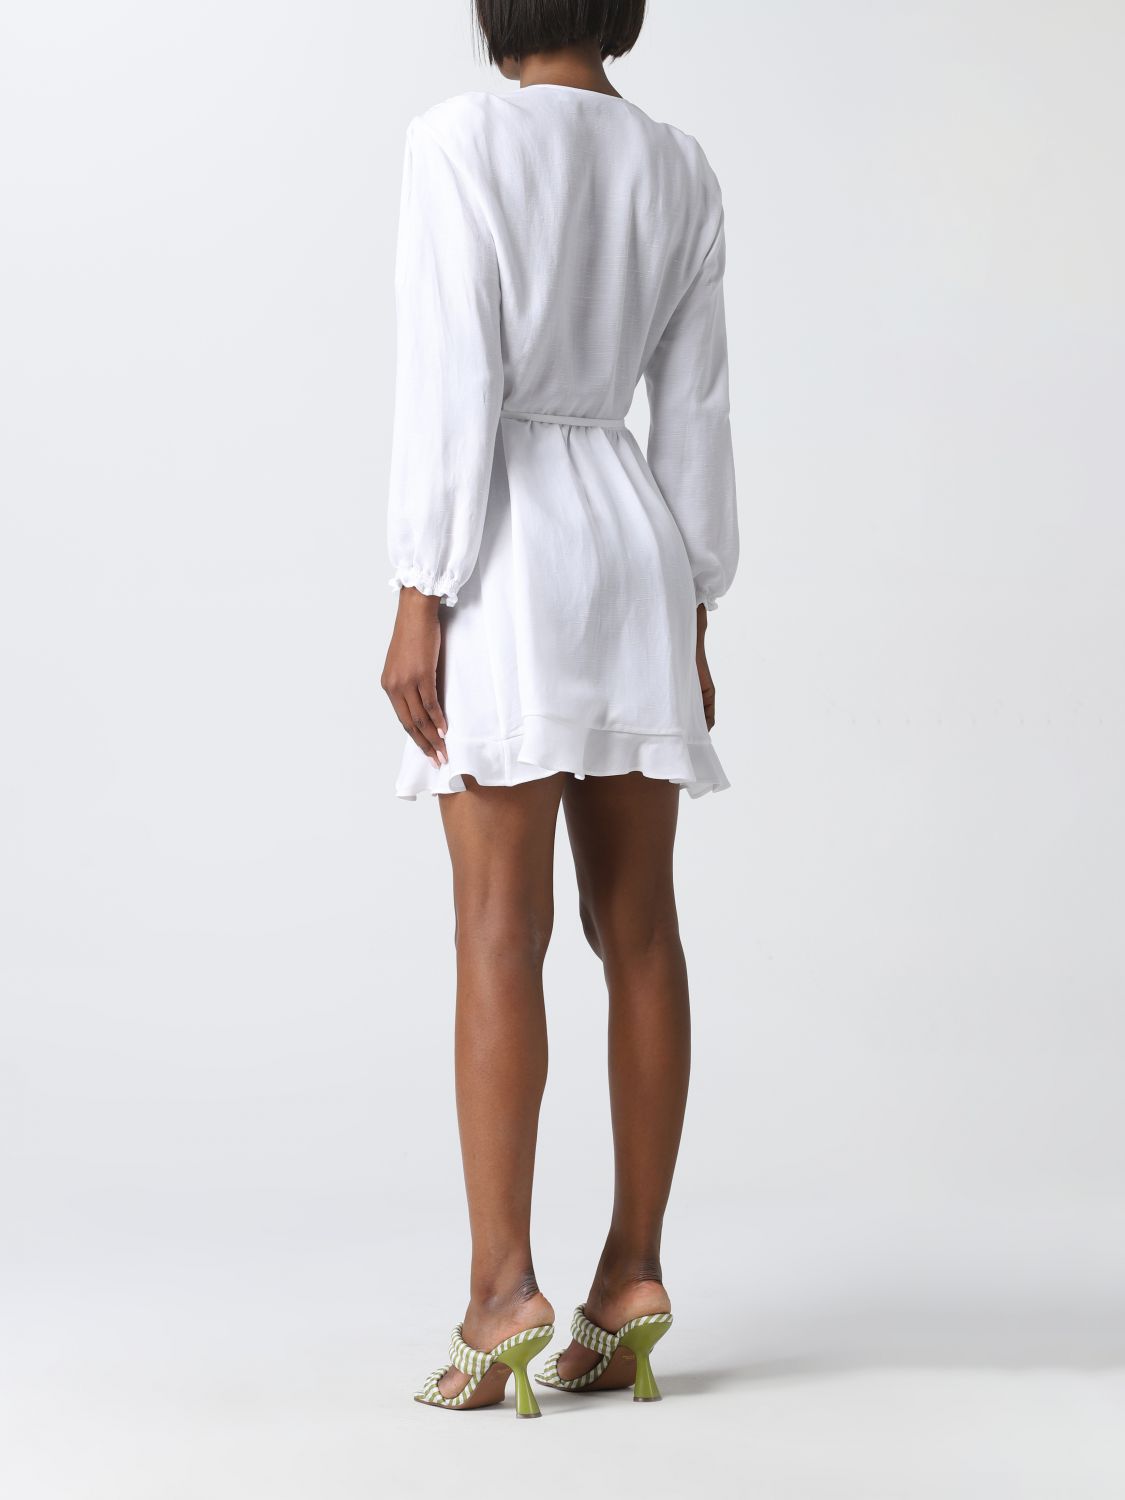 S, T1 Mini-Kleider Iro Damen weiß Mini-Kleid IRO 36 Damen Kleidung Iro Damen Kleider Iro Damen Mini-Kleider Iro Damen 